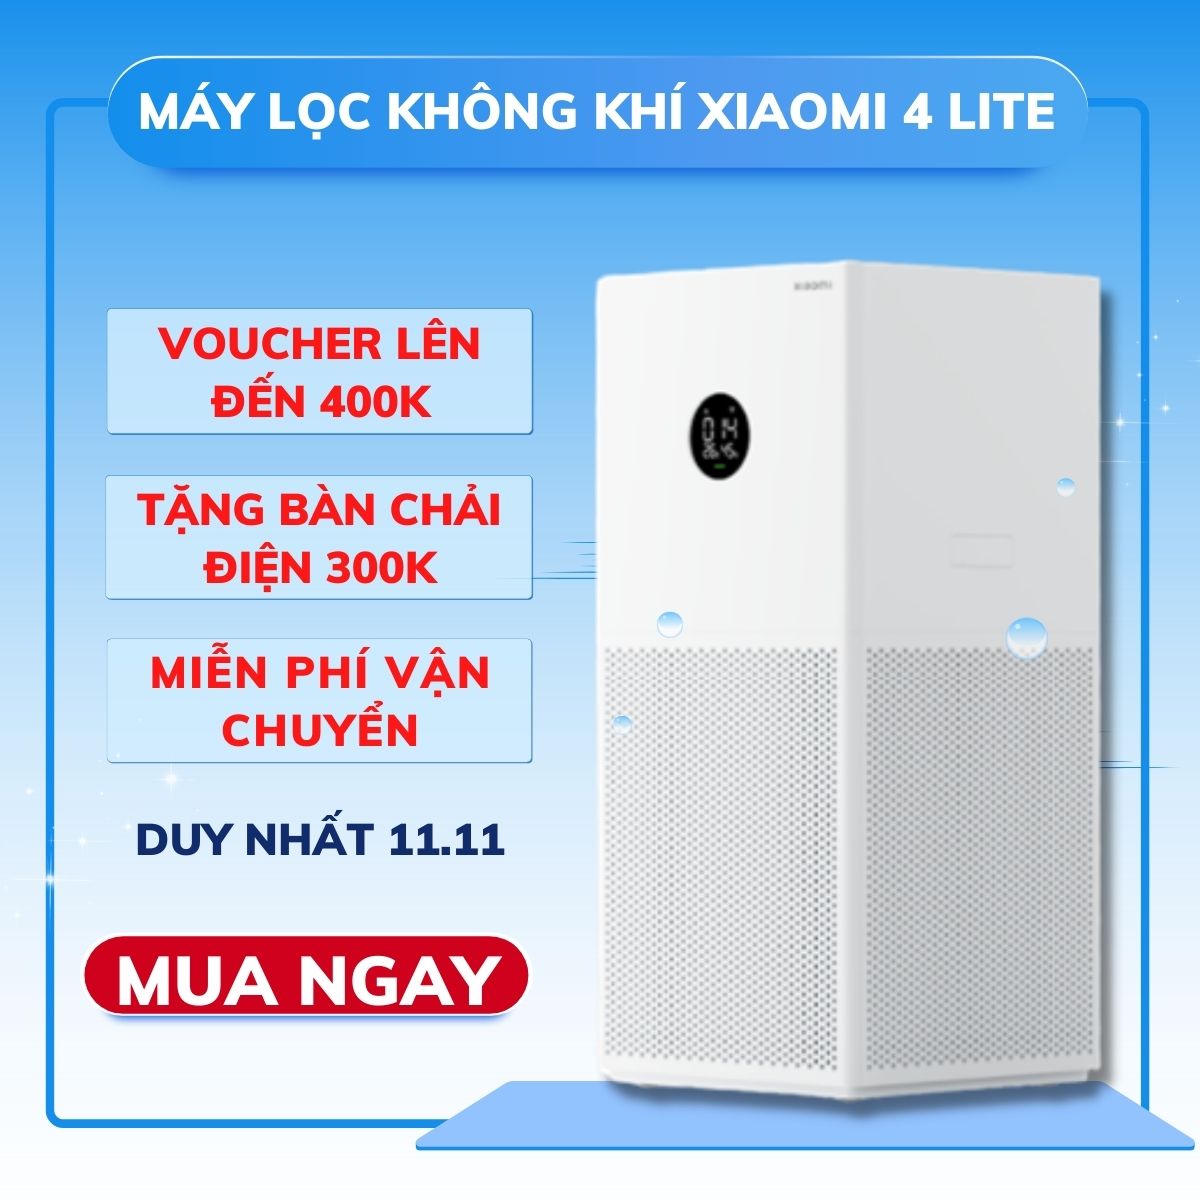 Máy Lọc Không Khí Xiaomi 4 LITE BẢN QUỐC TẾ | Air purifier | May loc khong khi | Lõi...